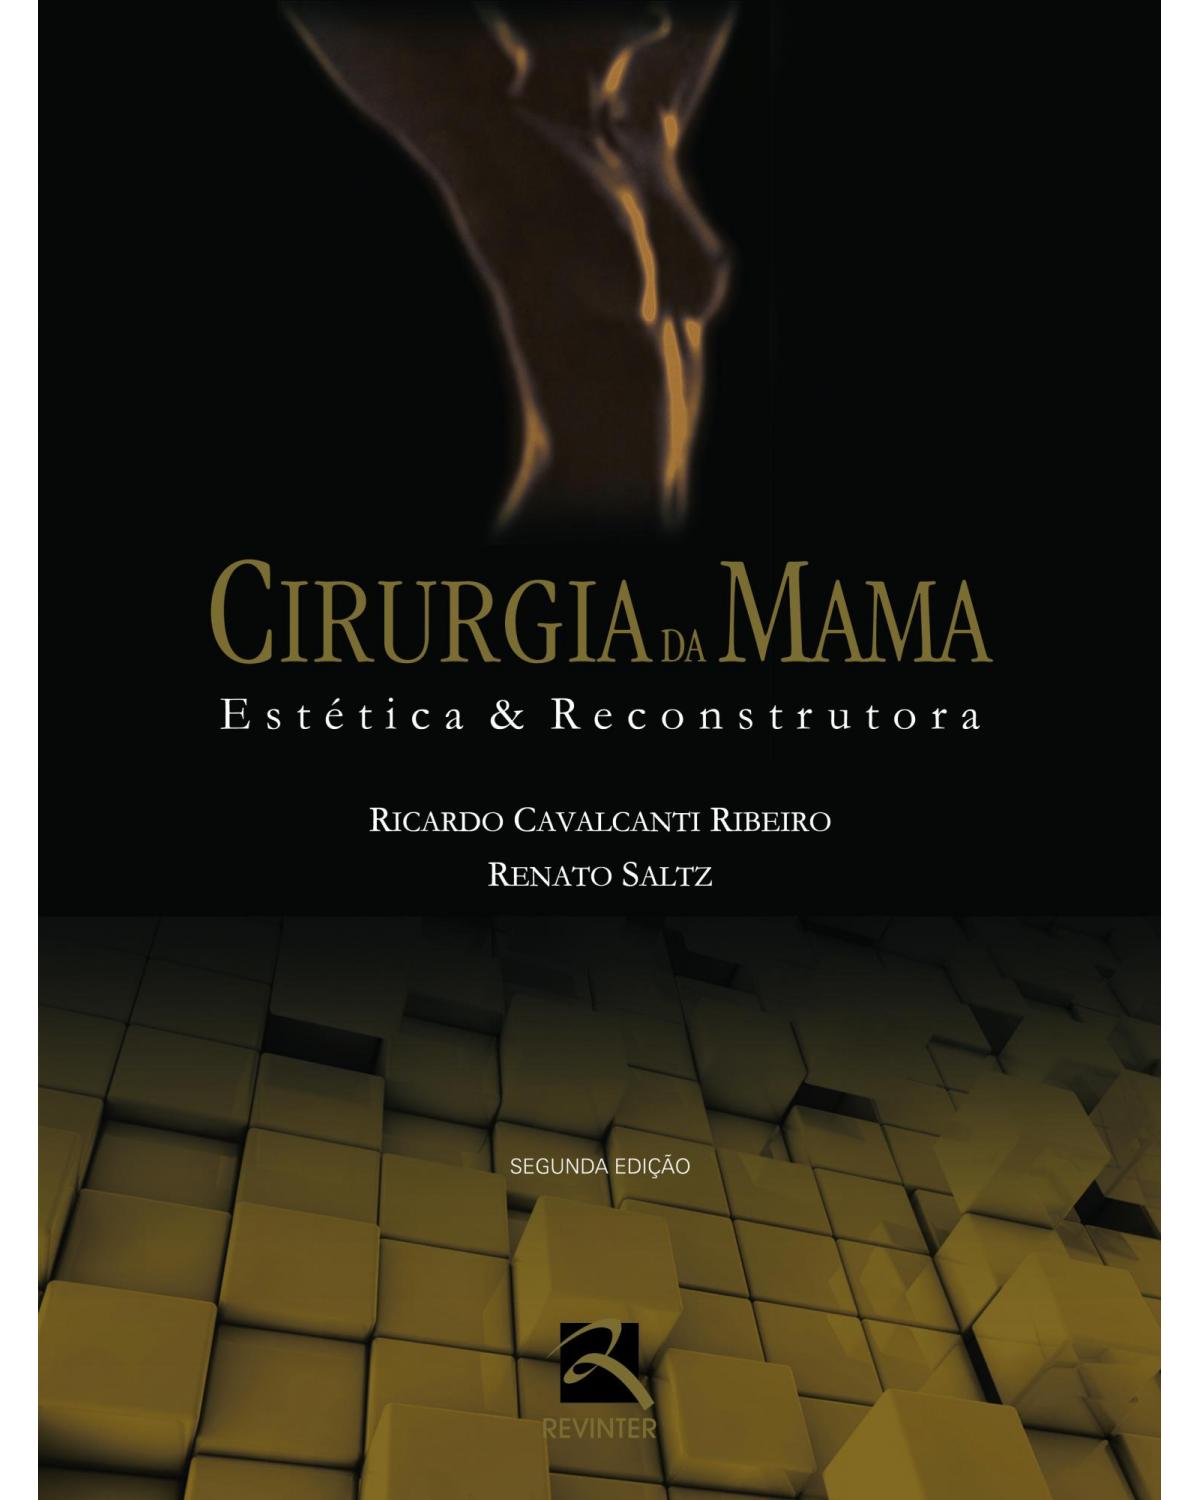 Cirurgia da mama - estética e reconstrutora - 2ª Edição | 2012